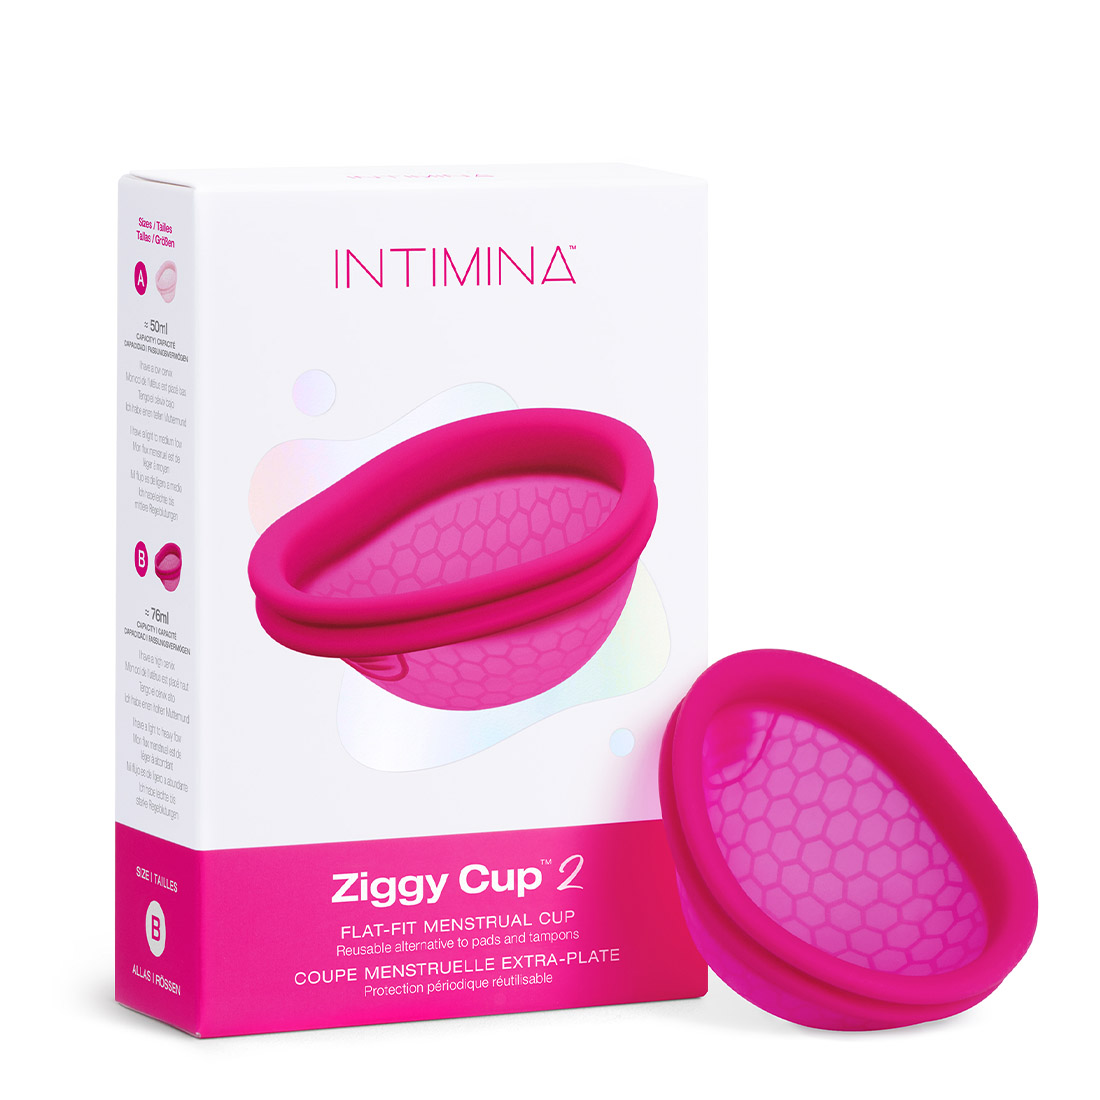 Intimina Ziggy Cup 2 kubeczek menstruacyjny do używania podczas stosunku